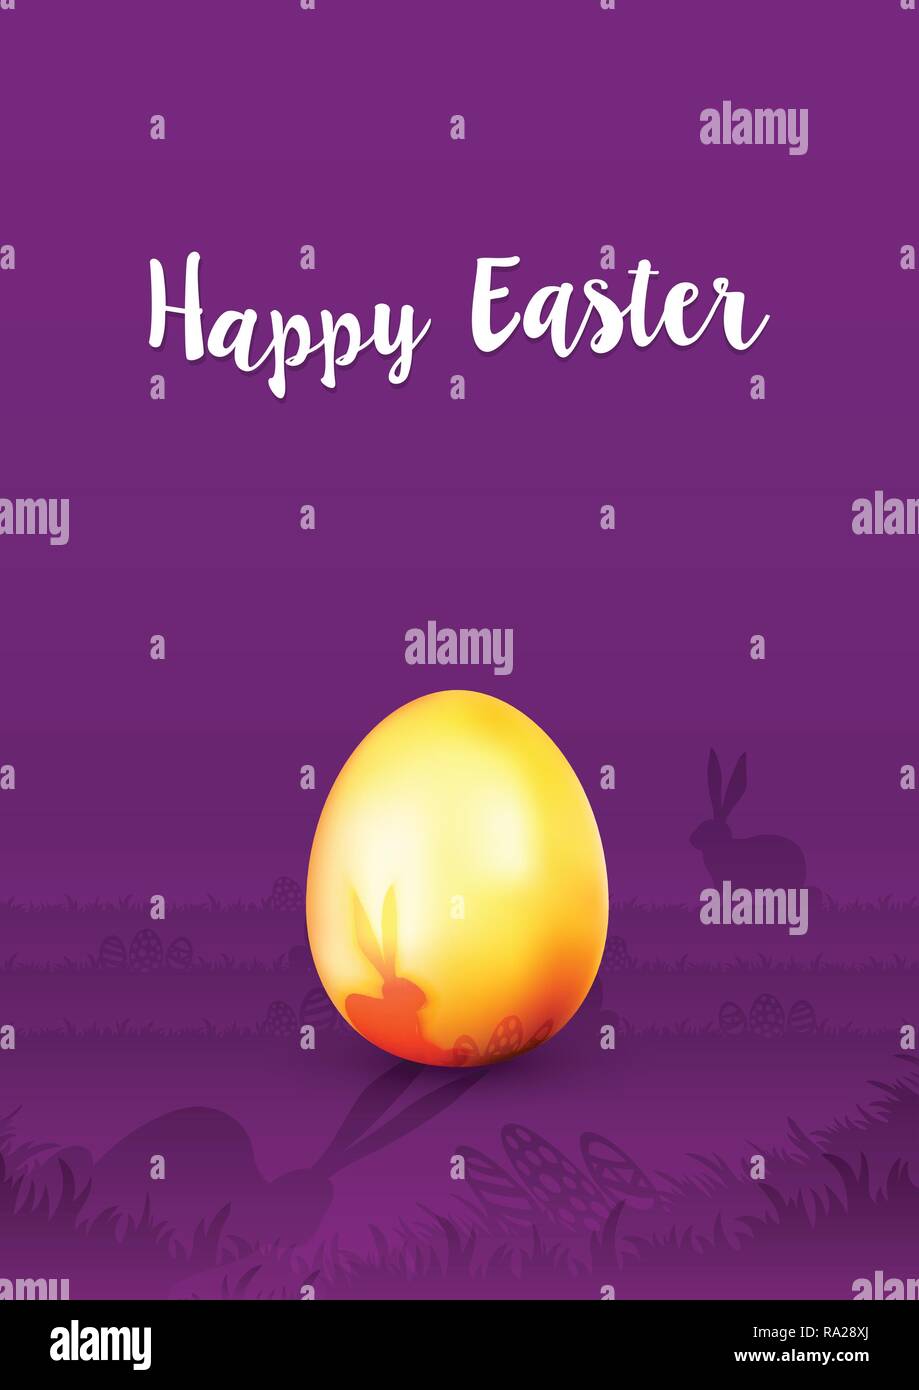 Carte de vœux de Pâques - oeuf de Pâques en or sur fond violet avec silhouette de lapin - Joyeuses Pâques Illustration de Vecteur